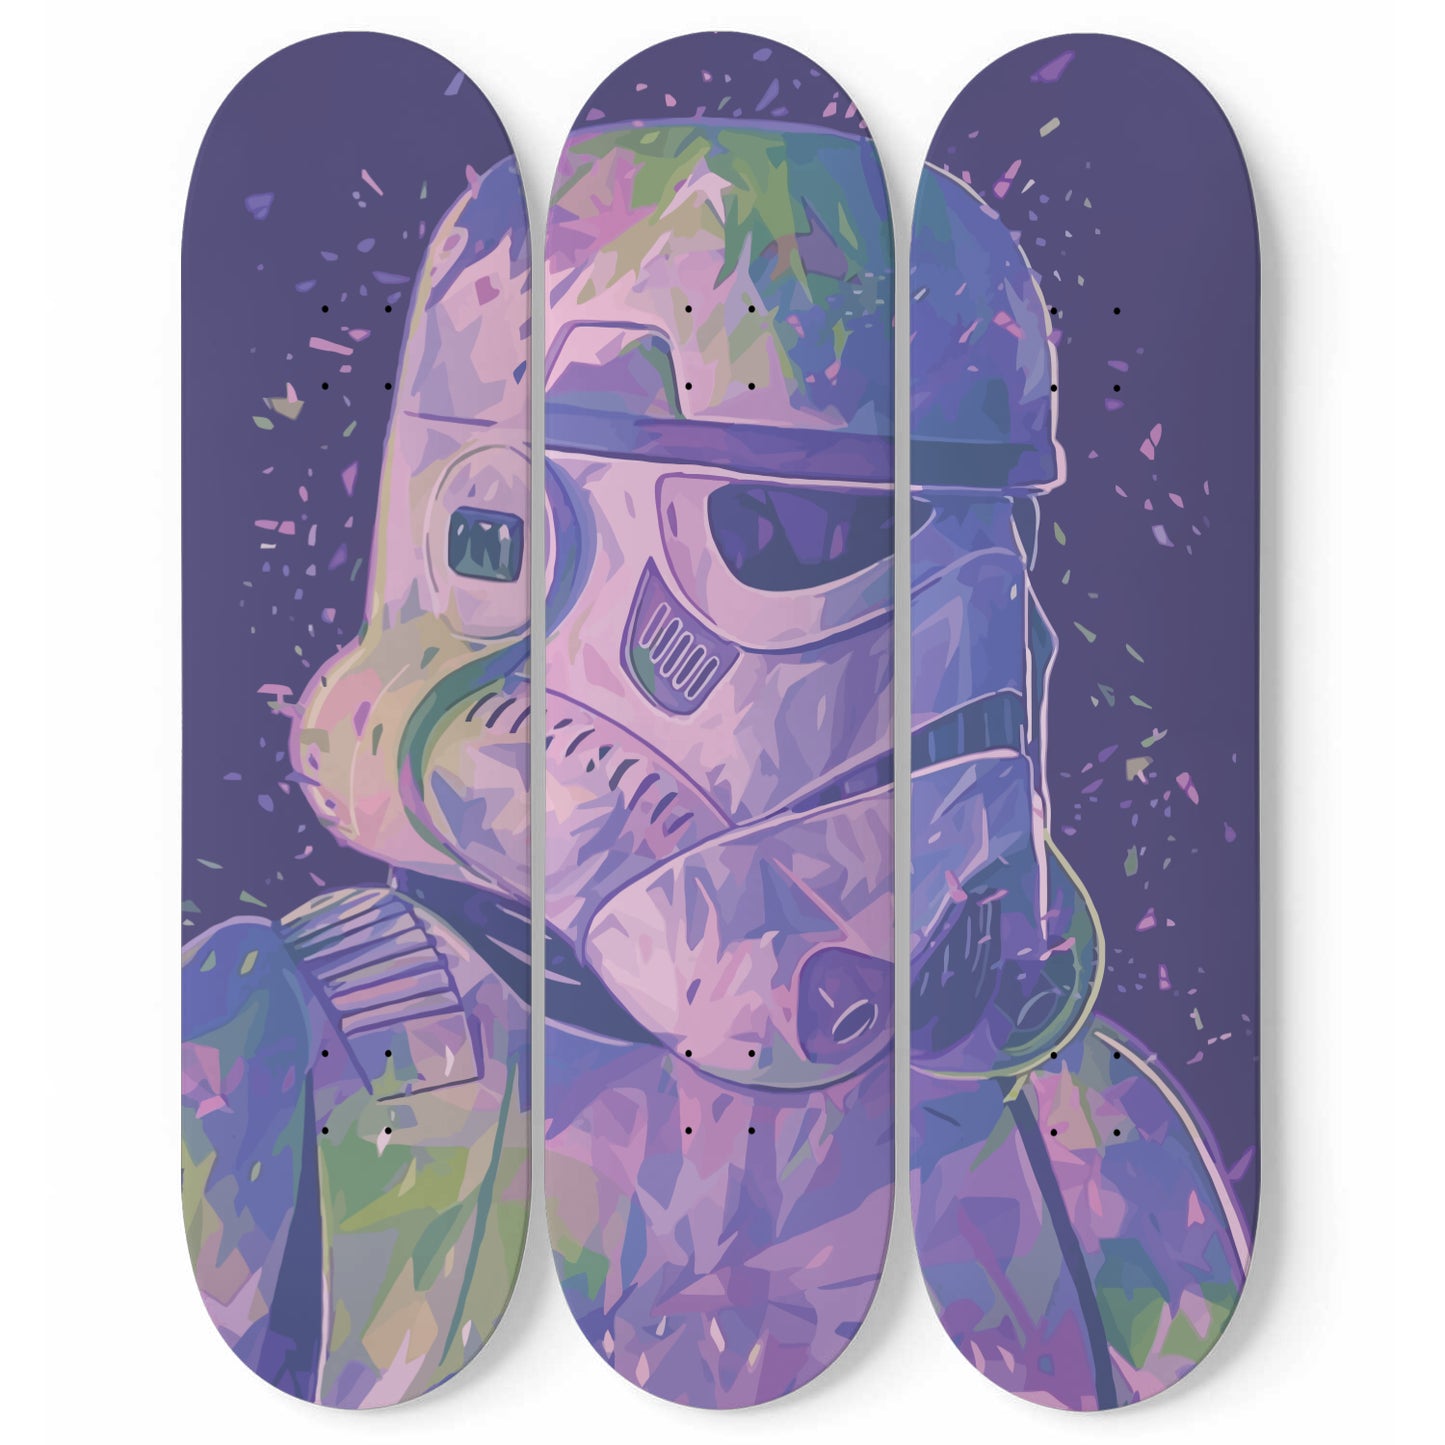 Star Wars - Stormtrooper - 3-piece Skateboard Wall Art